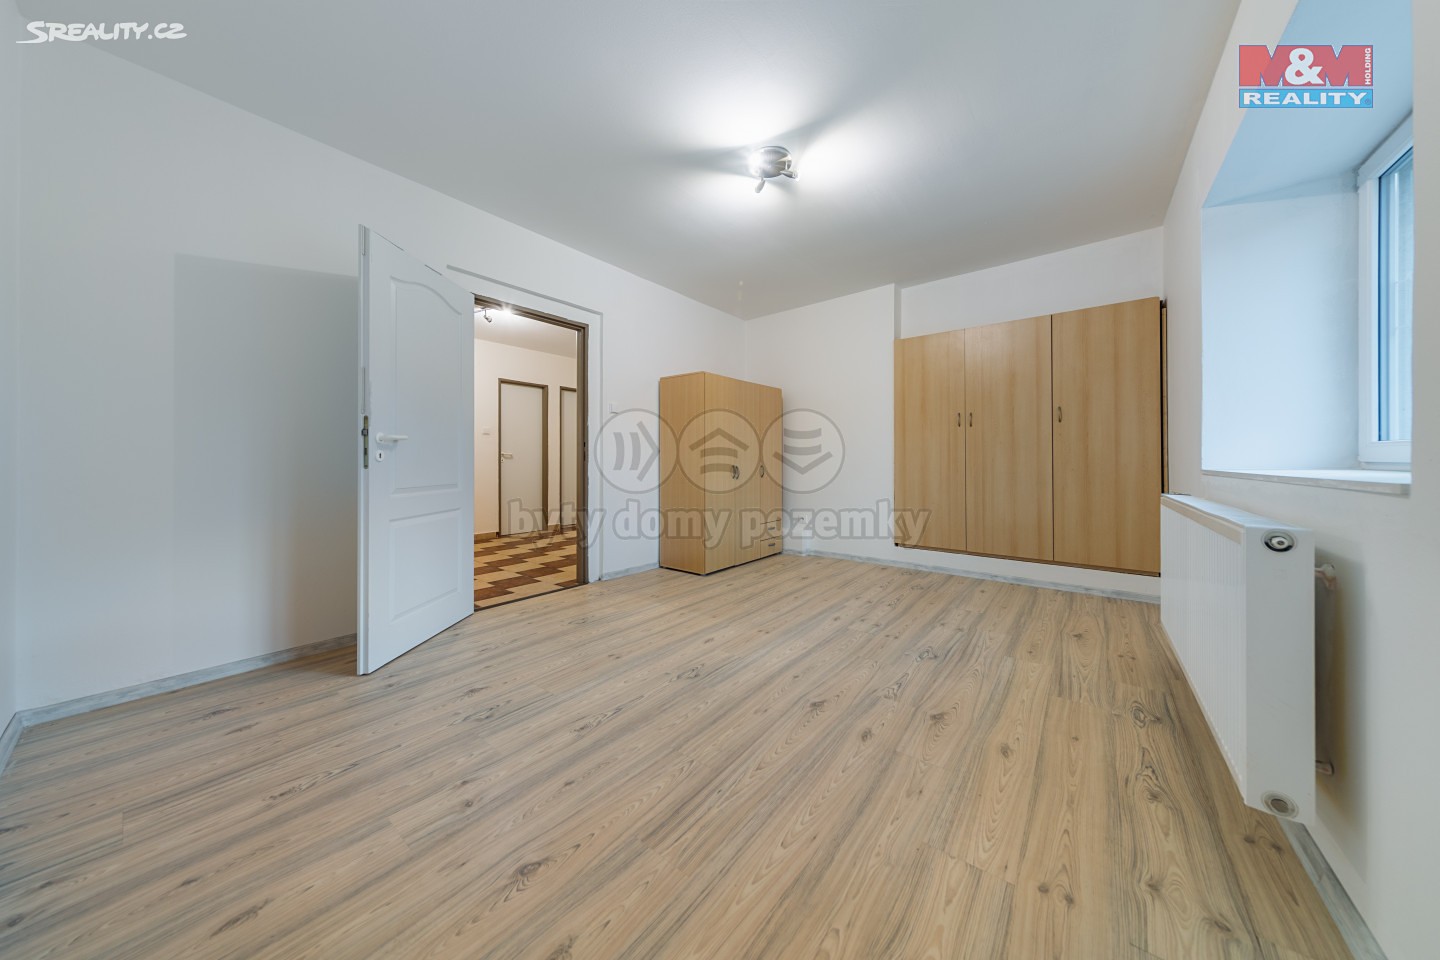 Prodej bytu 4+kk 94 m², Chrášťany - Bylany, okres Kolín